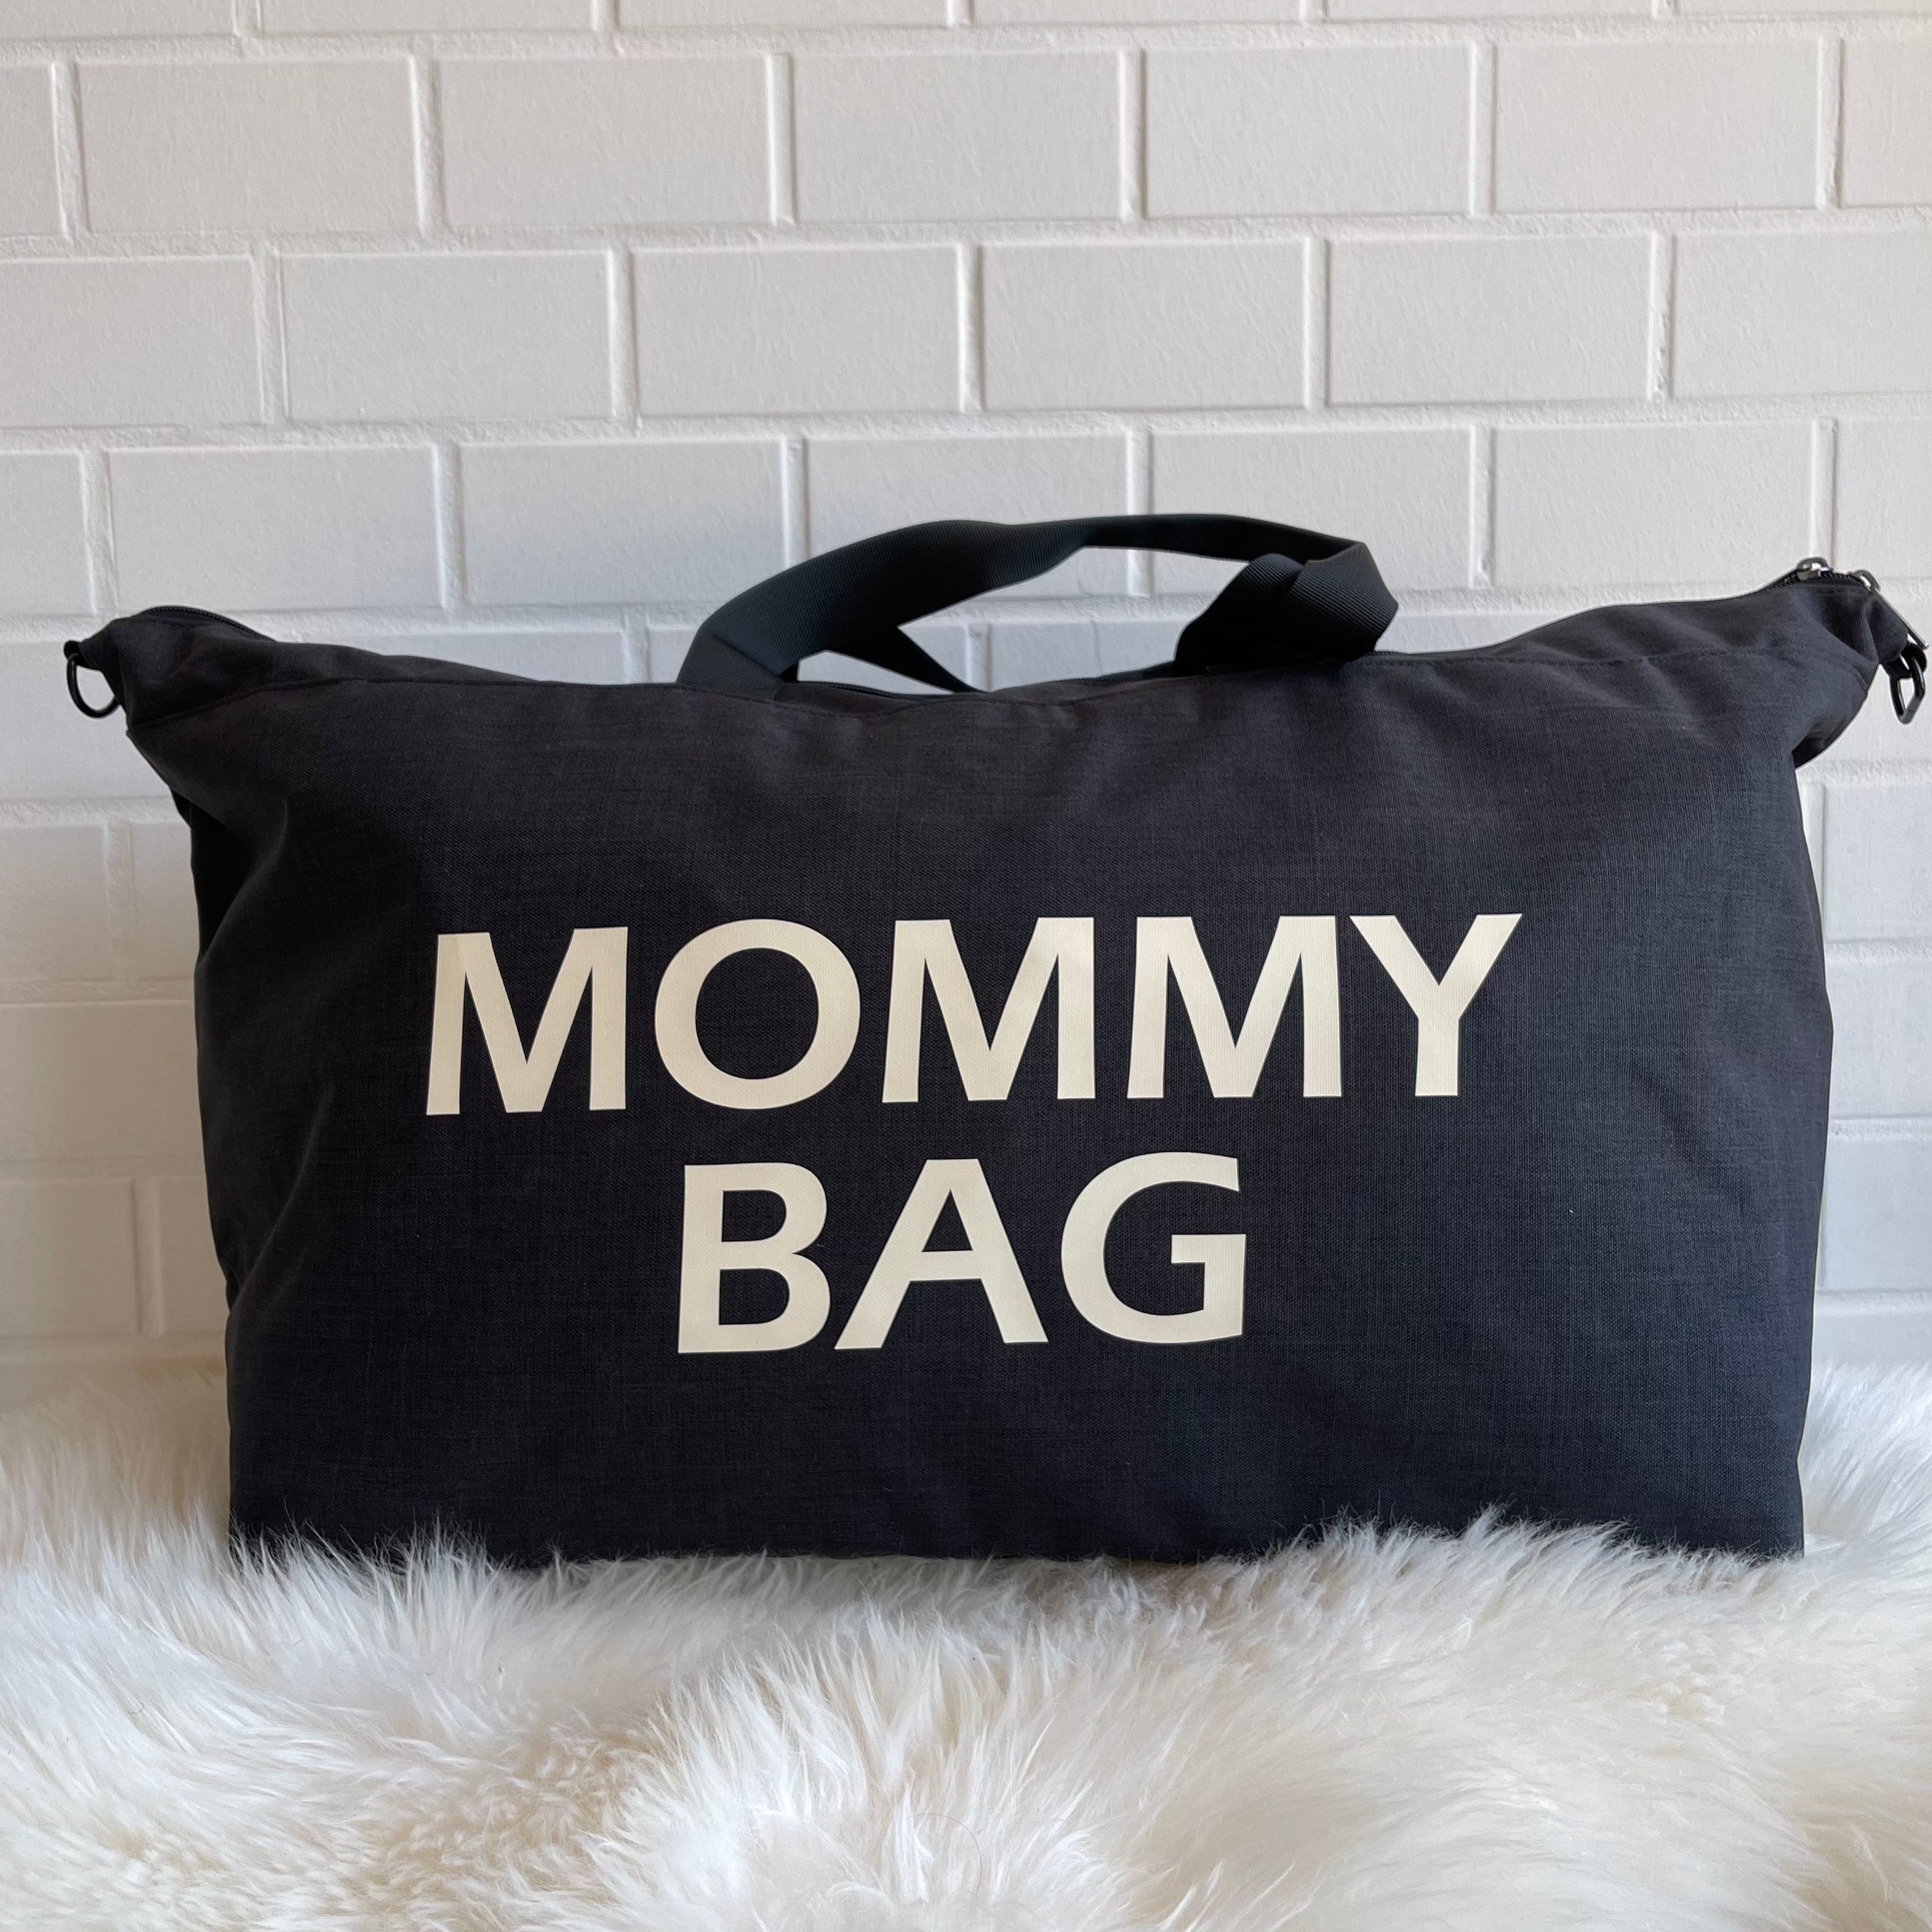 Borsone Parto Mommy Bag Nero Glitter e coppia Beauty Case in vendita  all'ingrosso per il tuo negozio